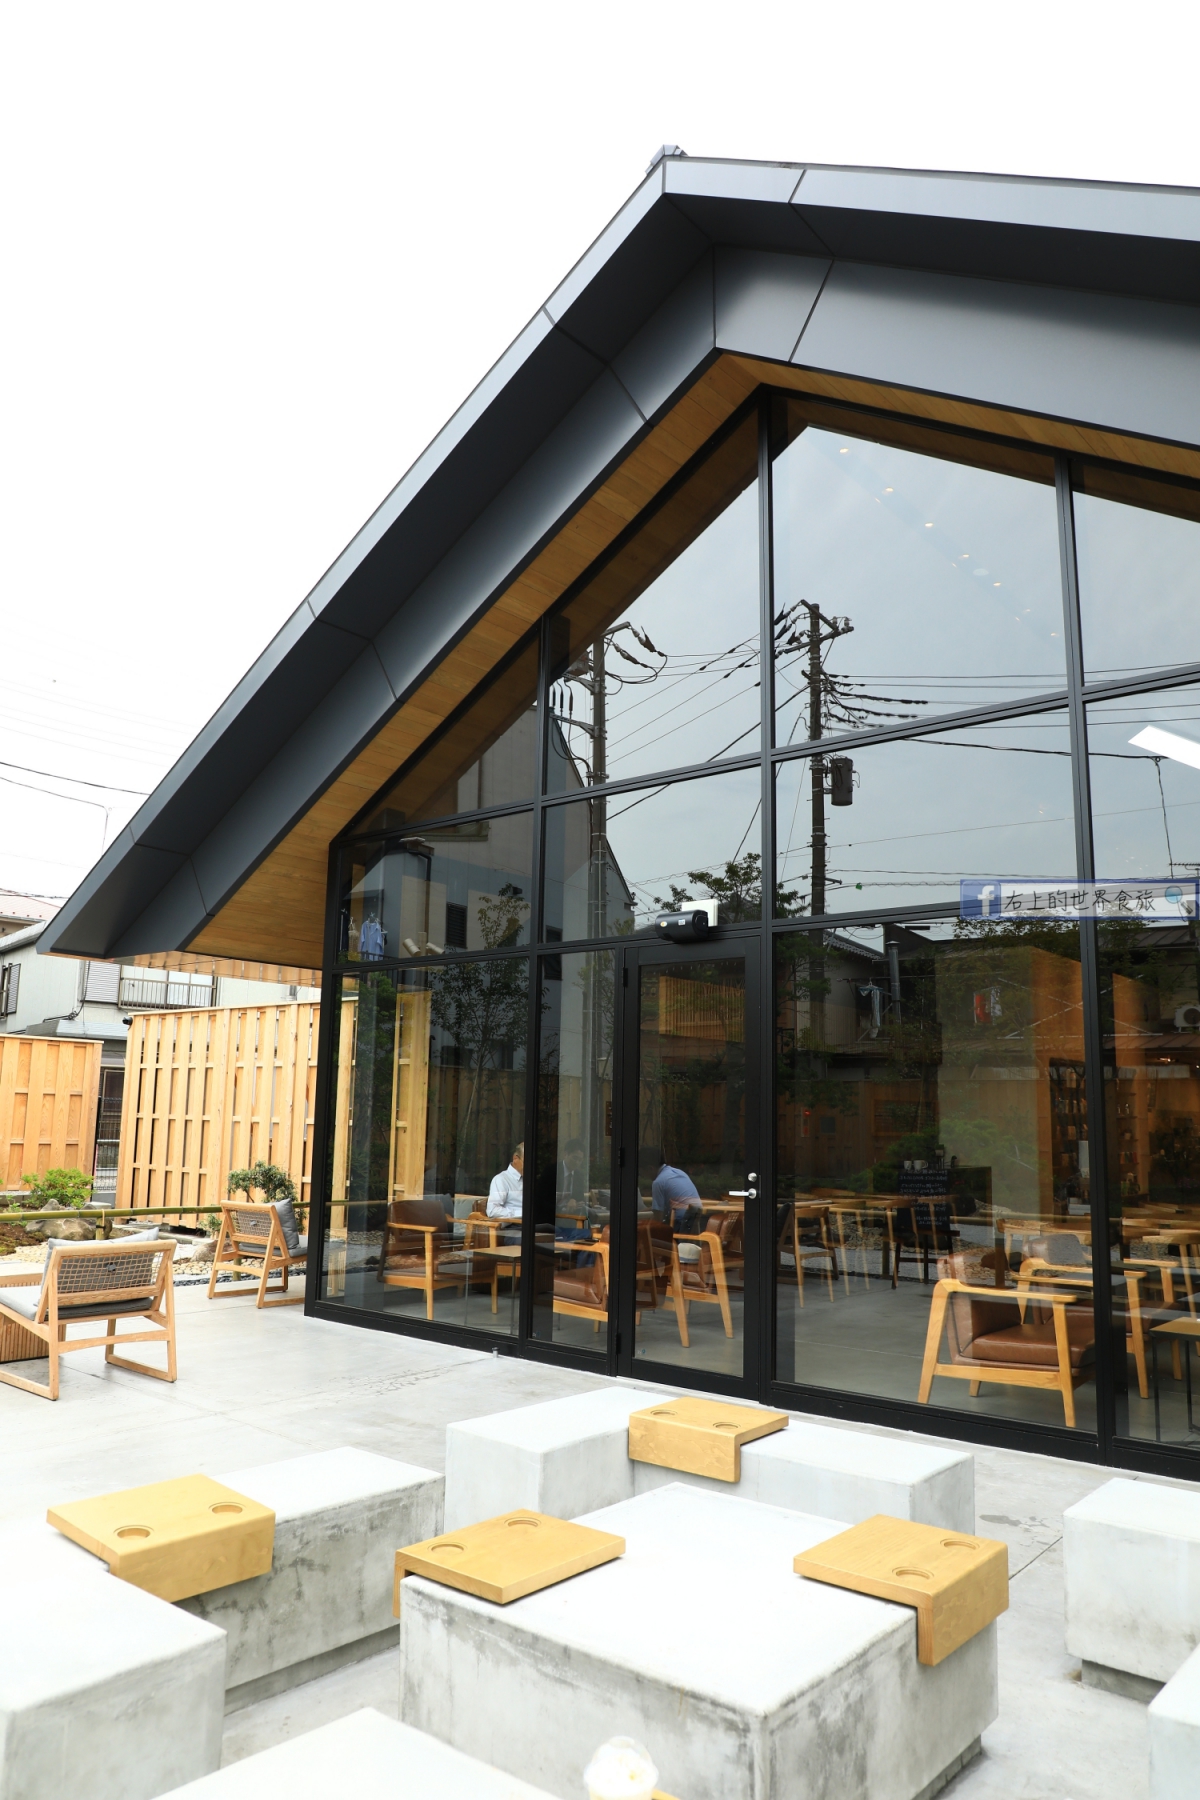 埼玉 川越旅遊-川越時鐘小路星巴克：優雅傳統的日式町家、庭園裡喝咖啡 @右上世界食旅